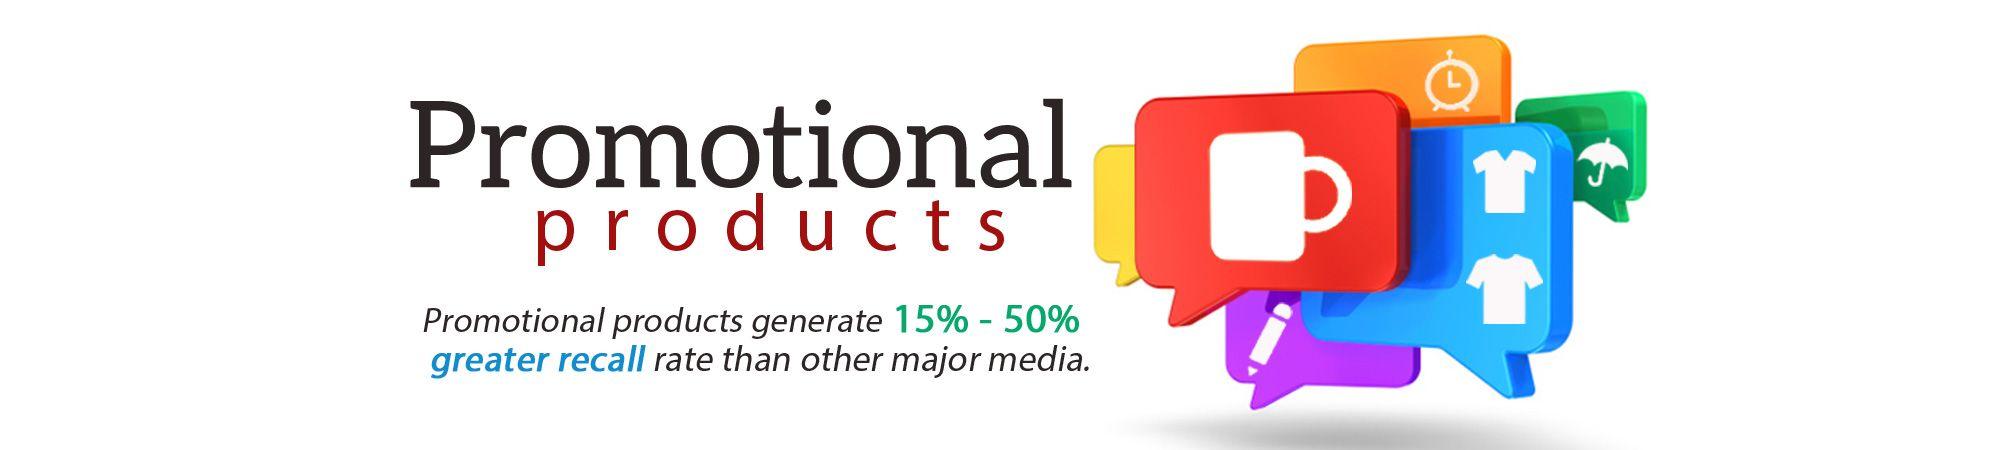 Promo Logo - MyLogoSource, Inc -Promotional Products, Logo, Marketing, Branding ...